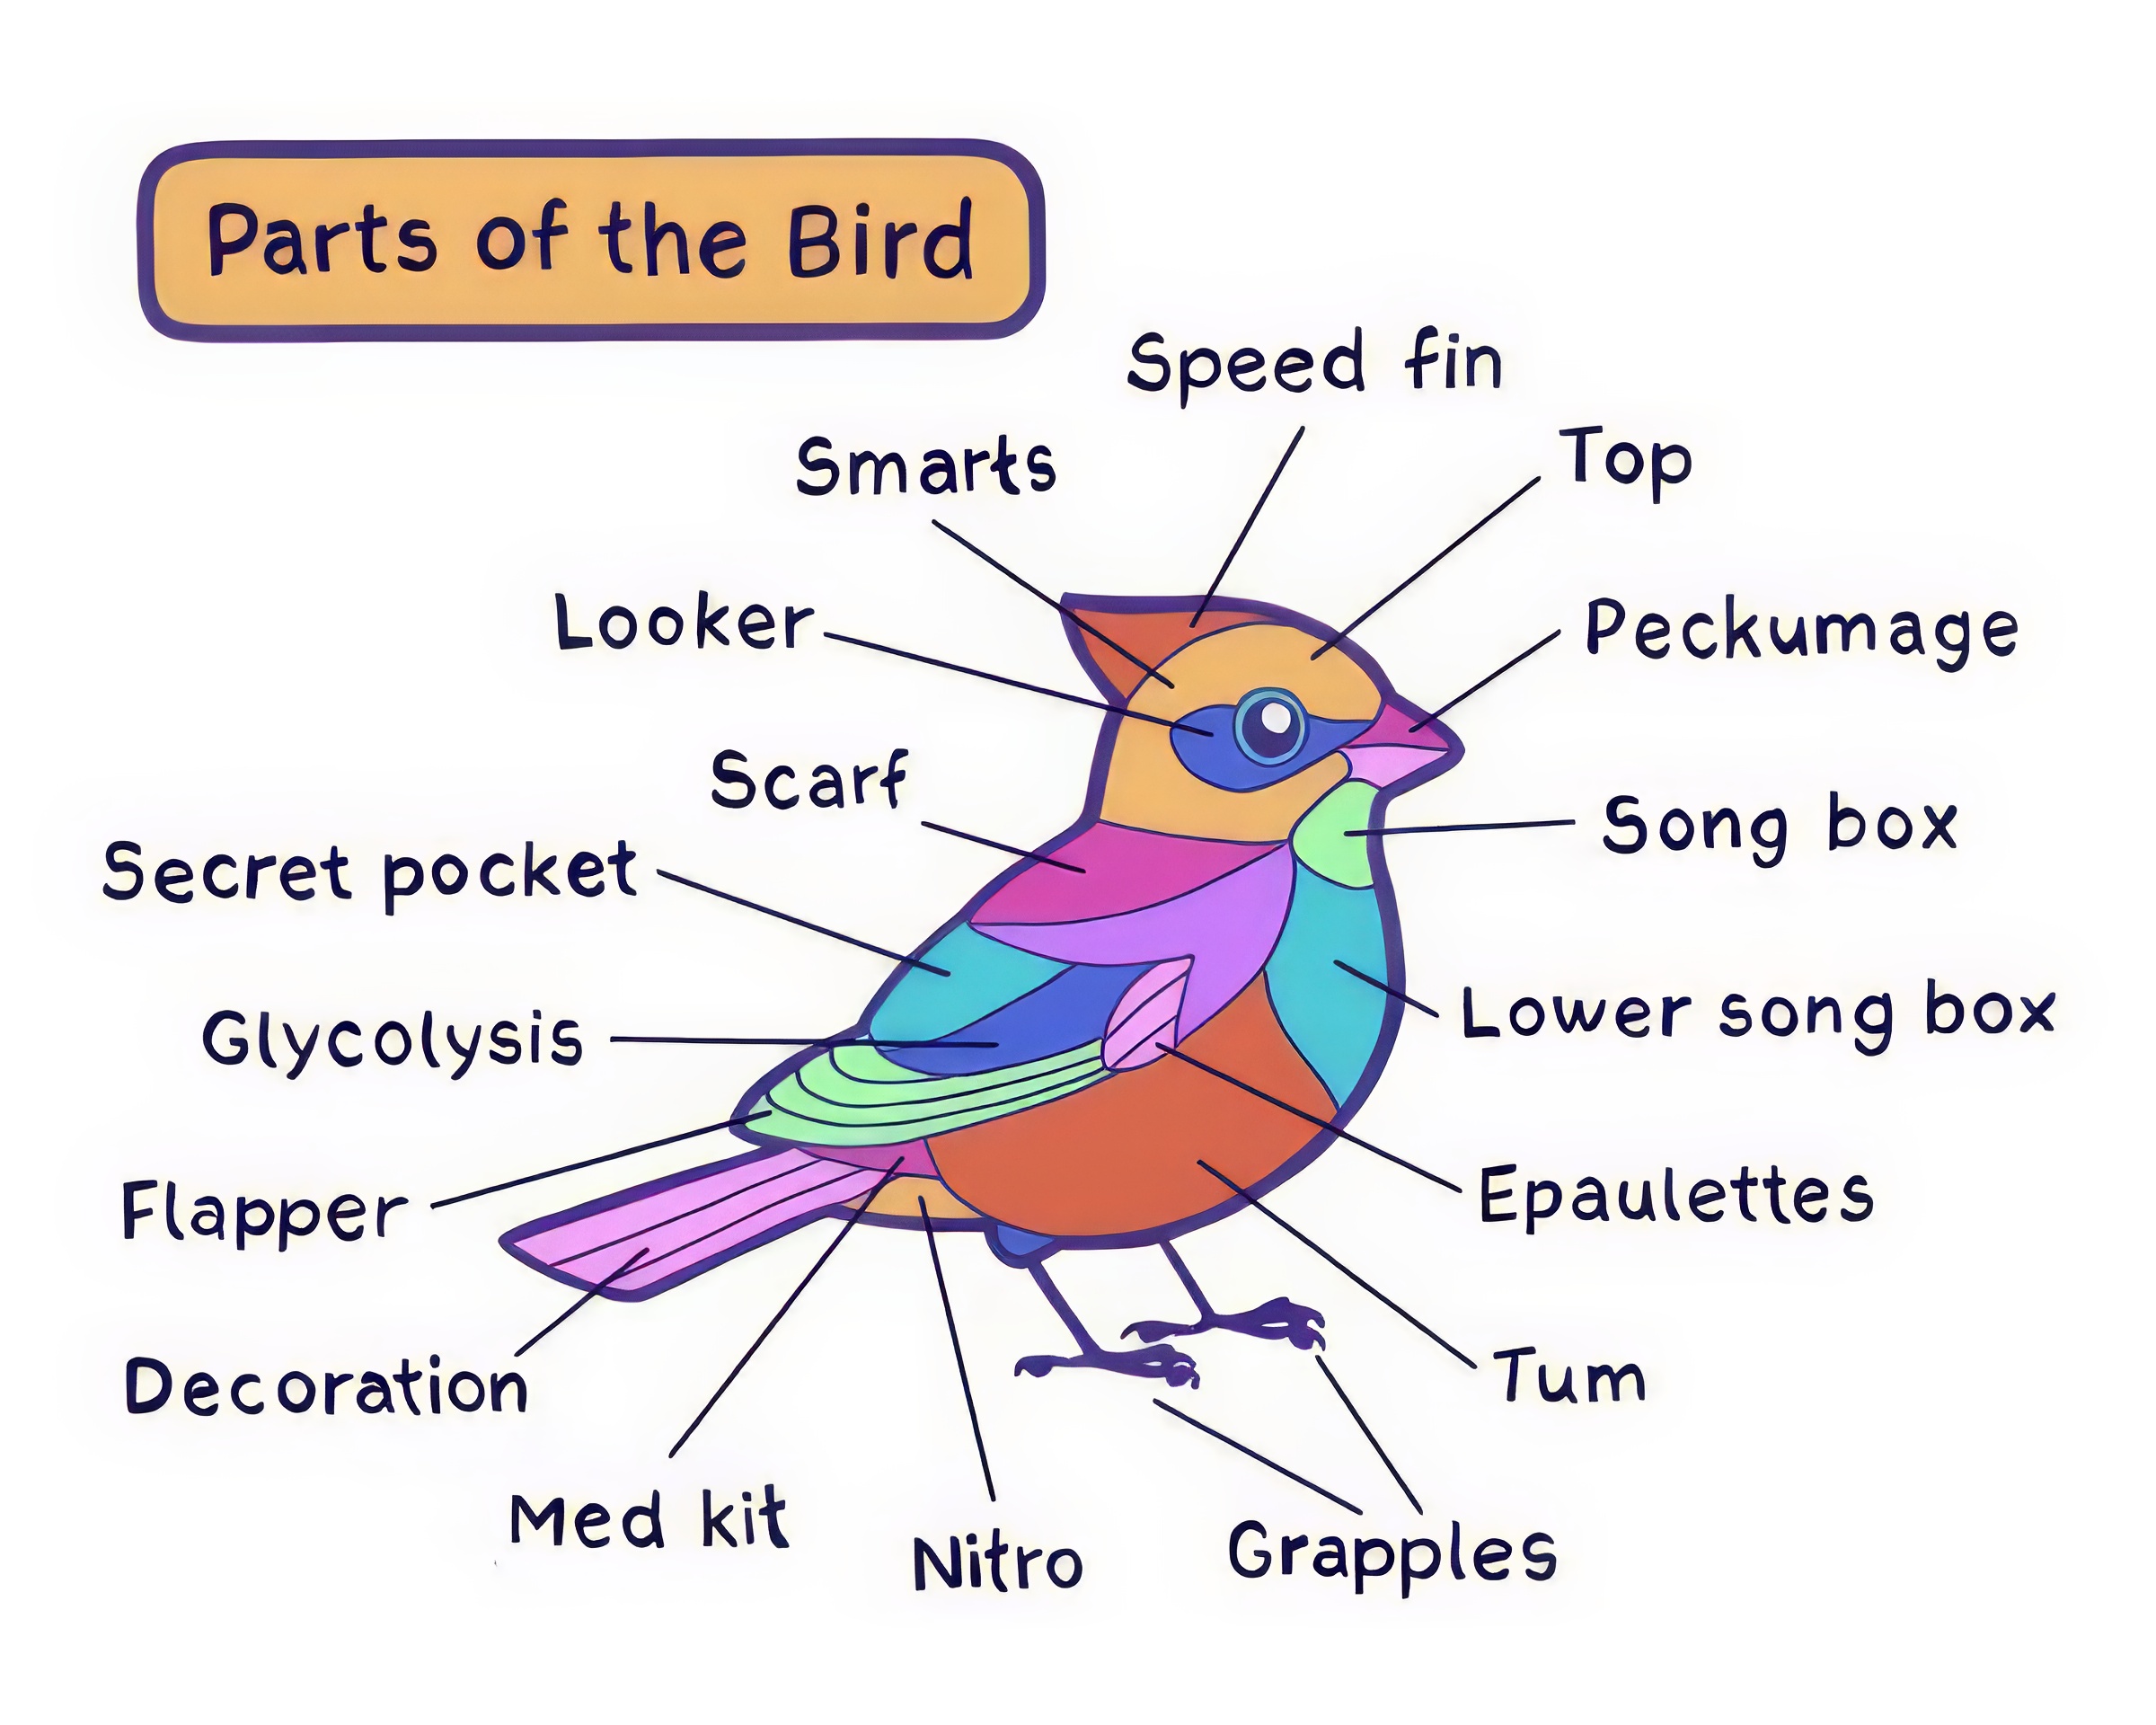 parts of the bird cartoon by Rosemary Mosco